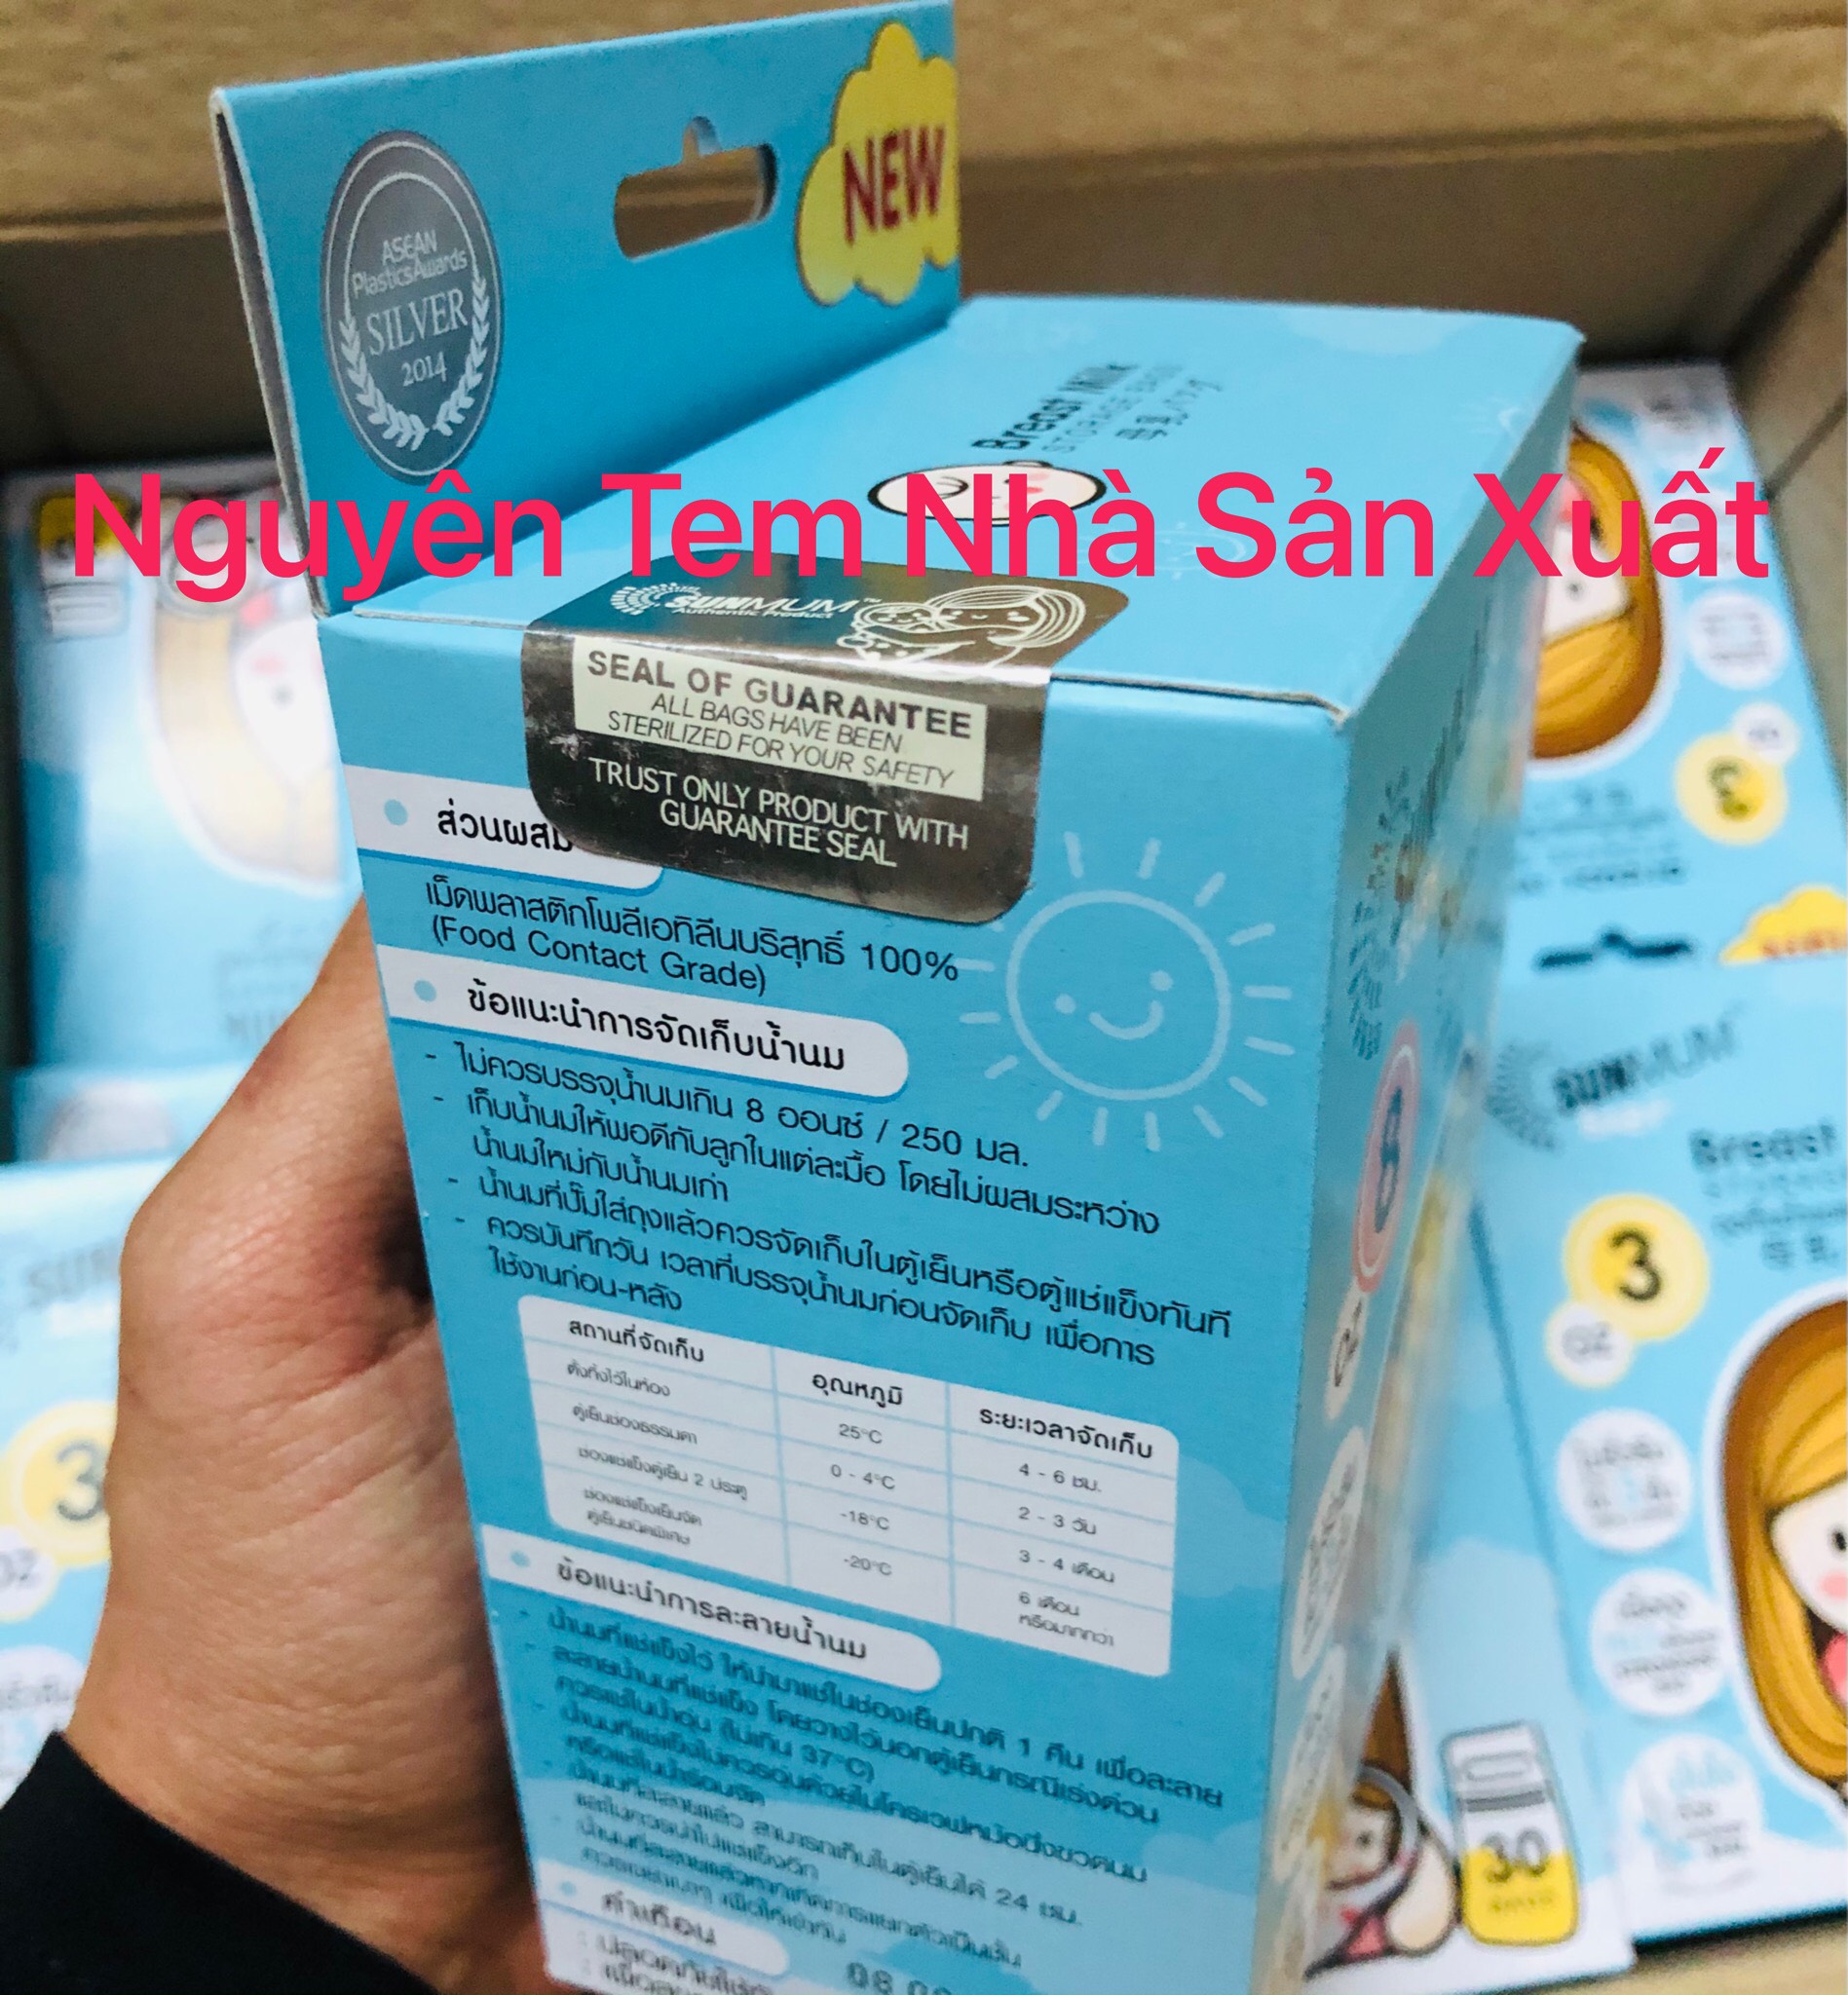 [Tặng bút ghi chú] Túi trữ sữa Sunmum Thái Lan 250ml, 100ml - 3 lớp khoá zip, Không độc hại,...